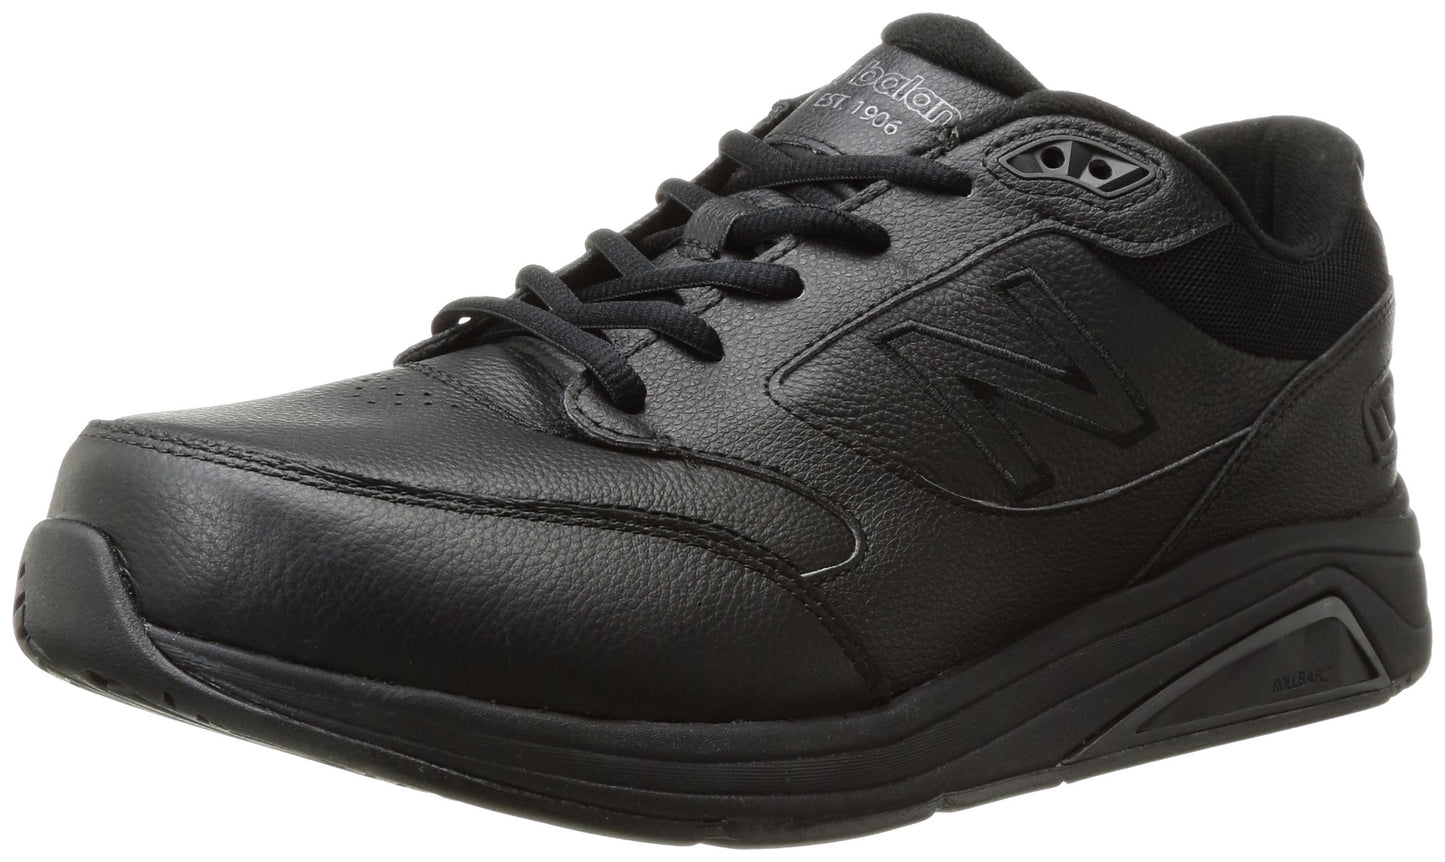 New Balance Men's 928 V3 Lace-up Walking Shoe, Black/Black, 9 Wide US